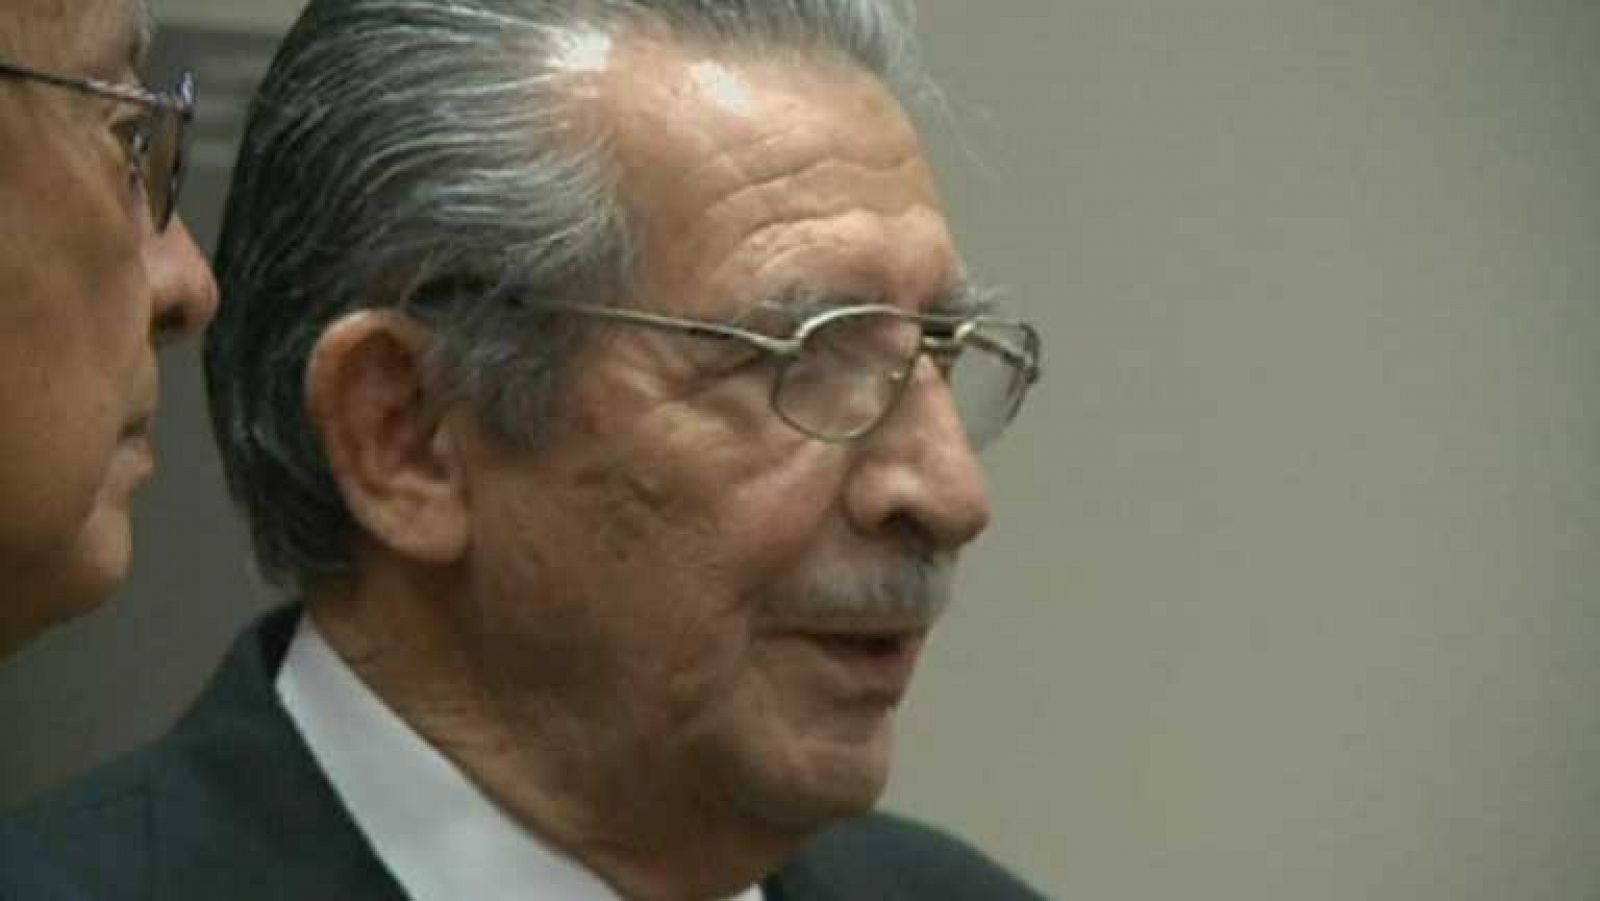 Un juez va a sentar en el banquillo al exgeneral golpista Ríos Montt por genocidio y crímenes contra la humanidad 